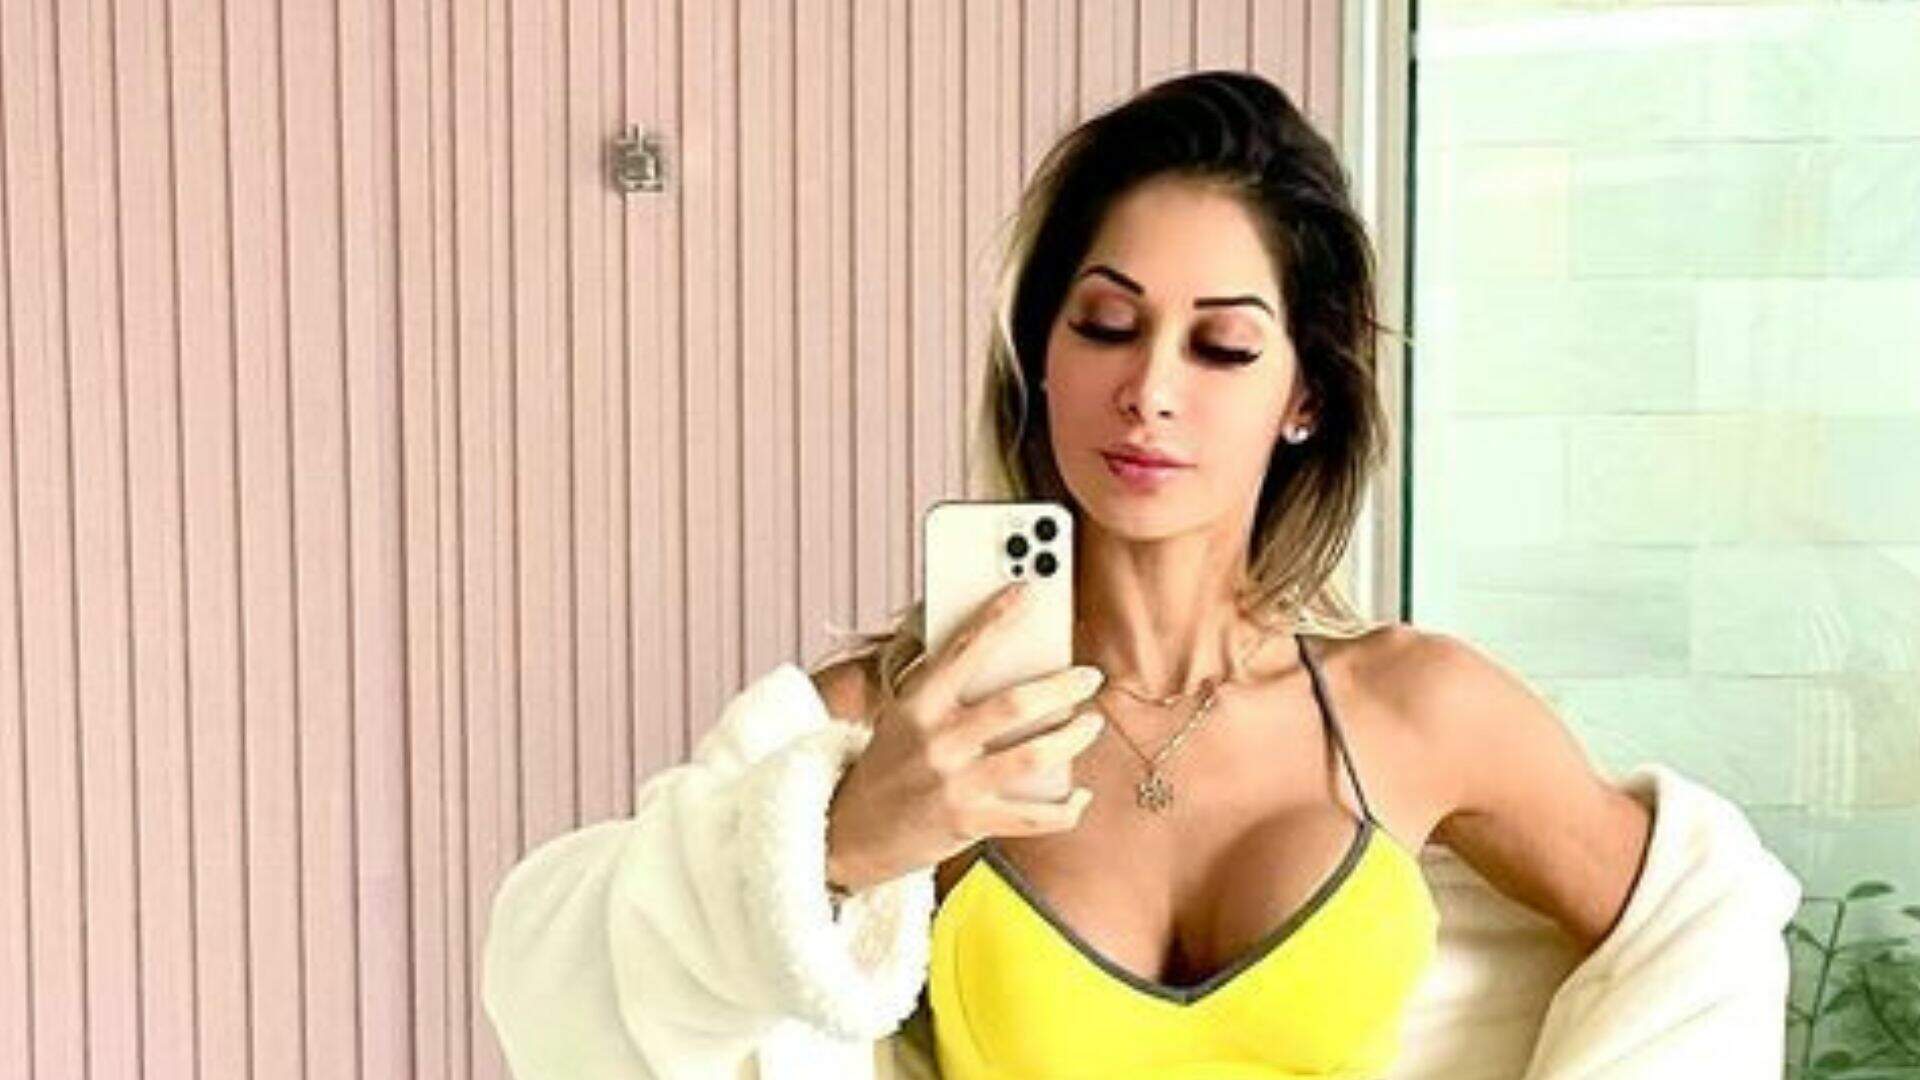 Após separação, Maíra Cardi dispensa roupas e tira foto mostrando corpo no banheiro: “Durinha”